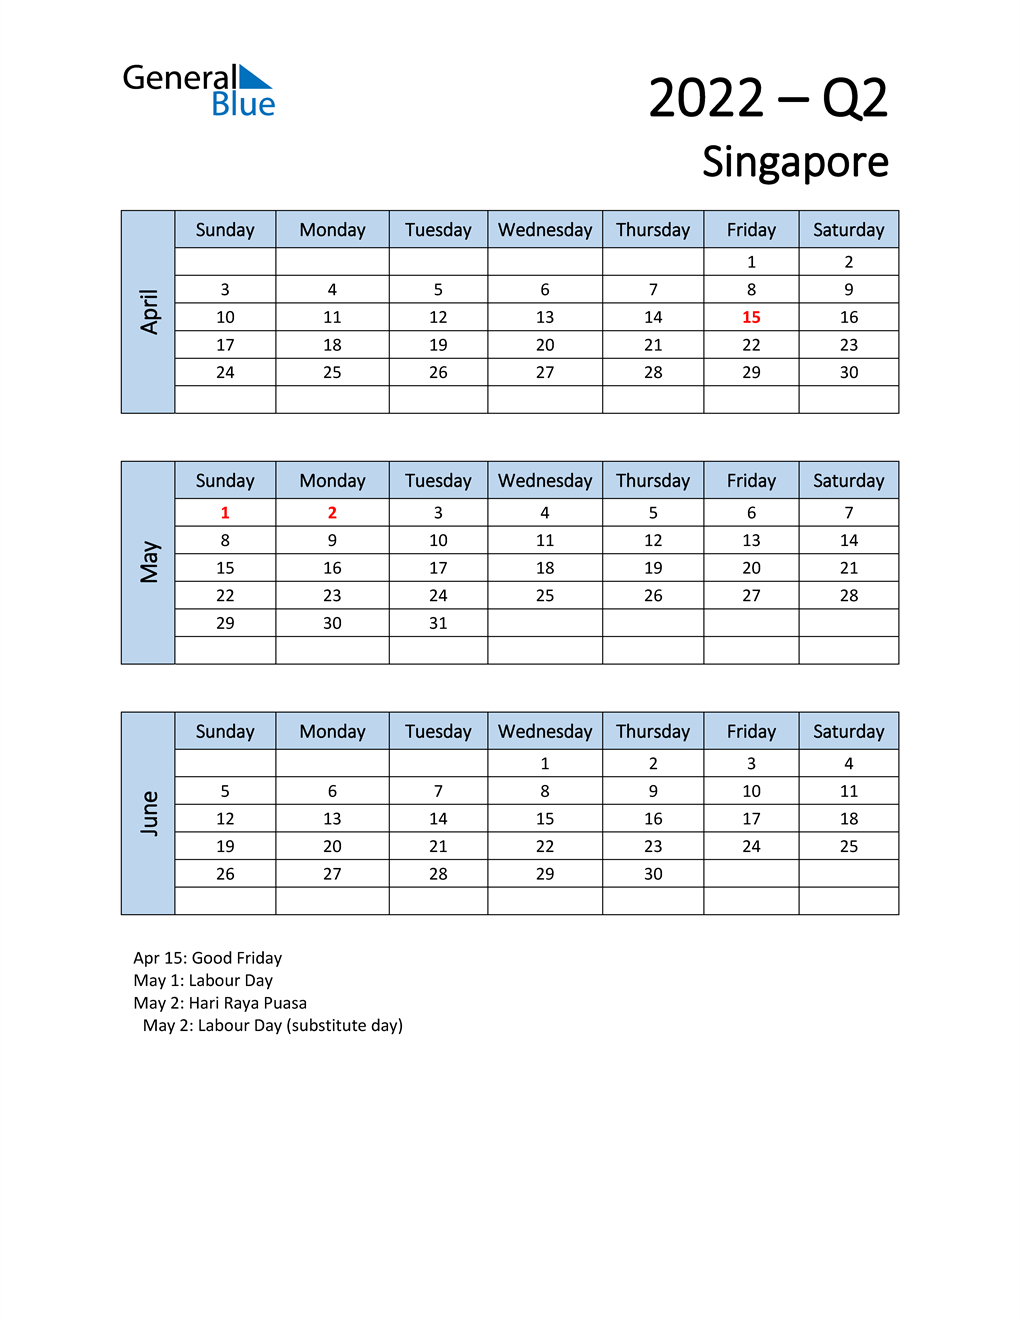 Q2 2022 Quarterly Calendar For Singapore